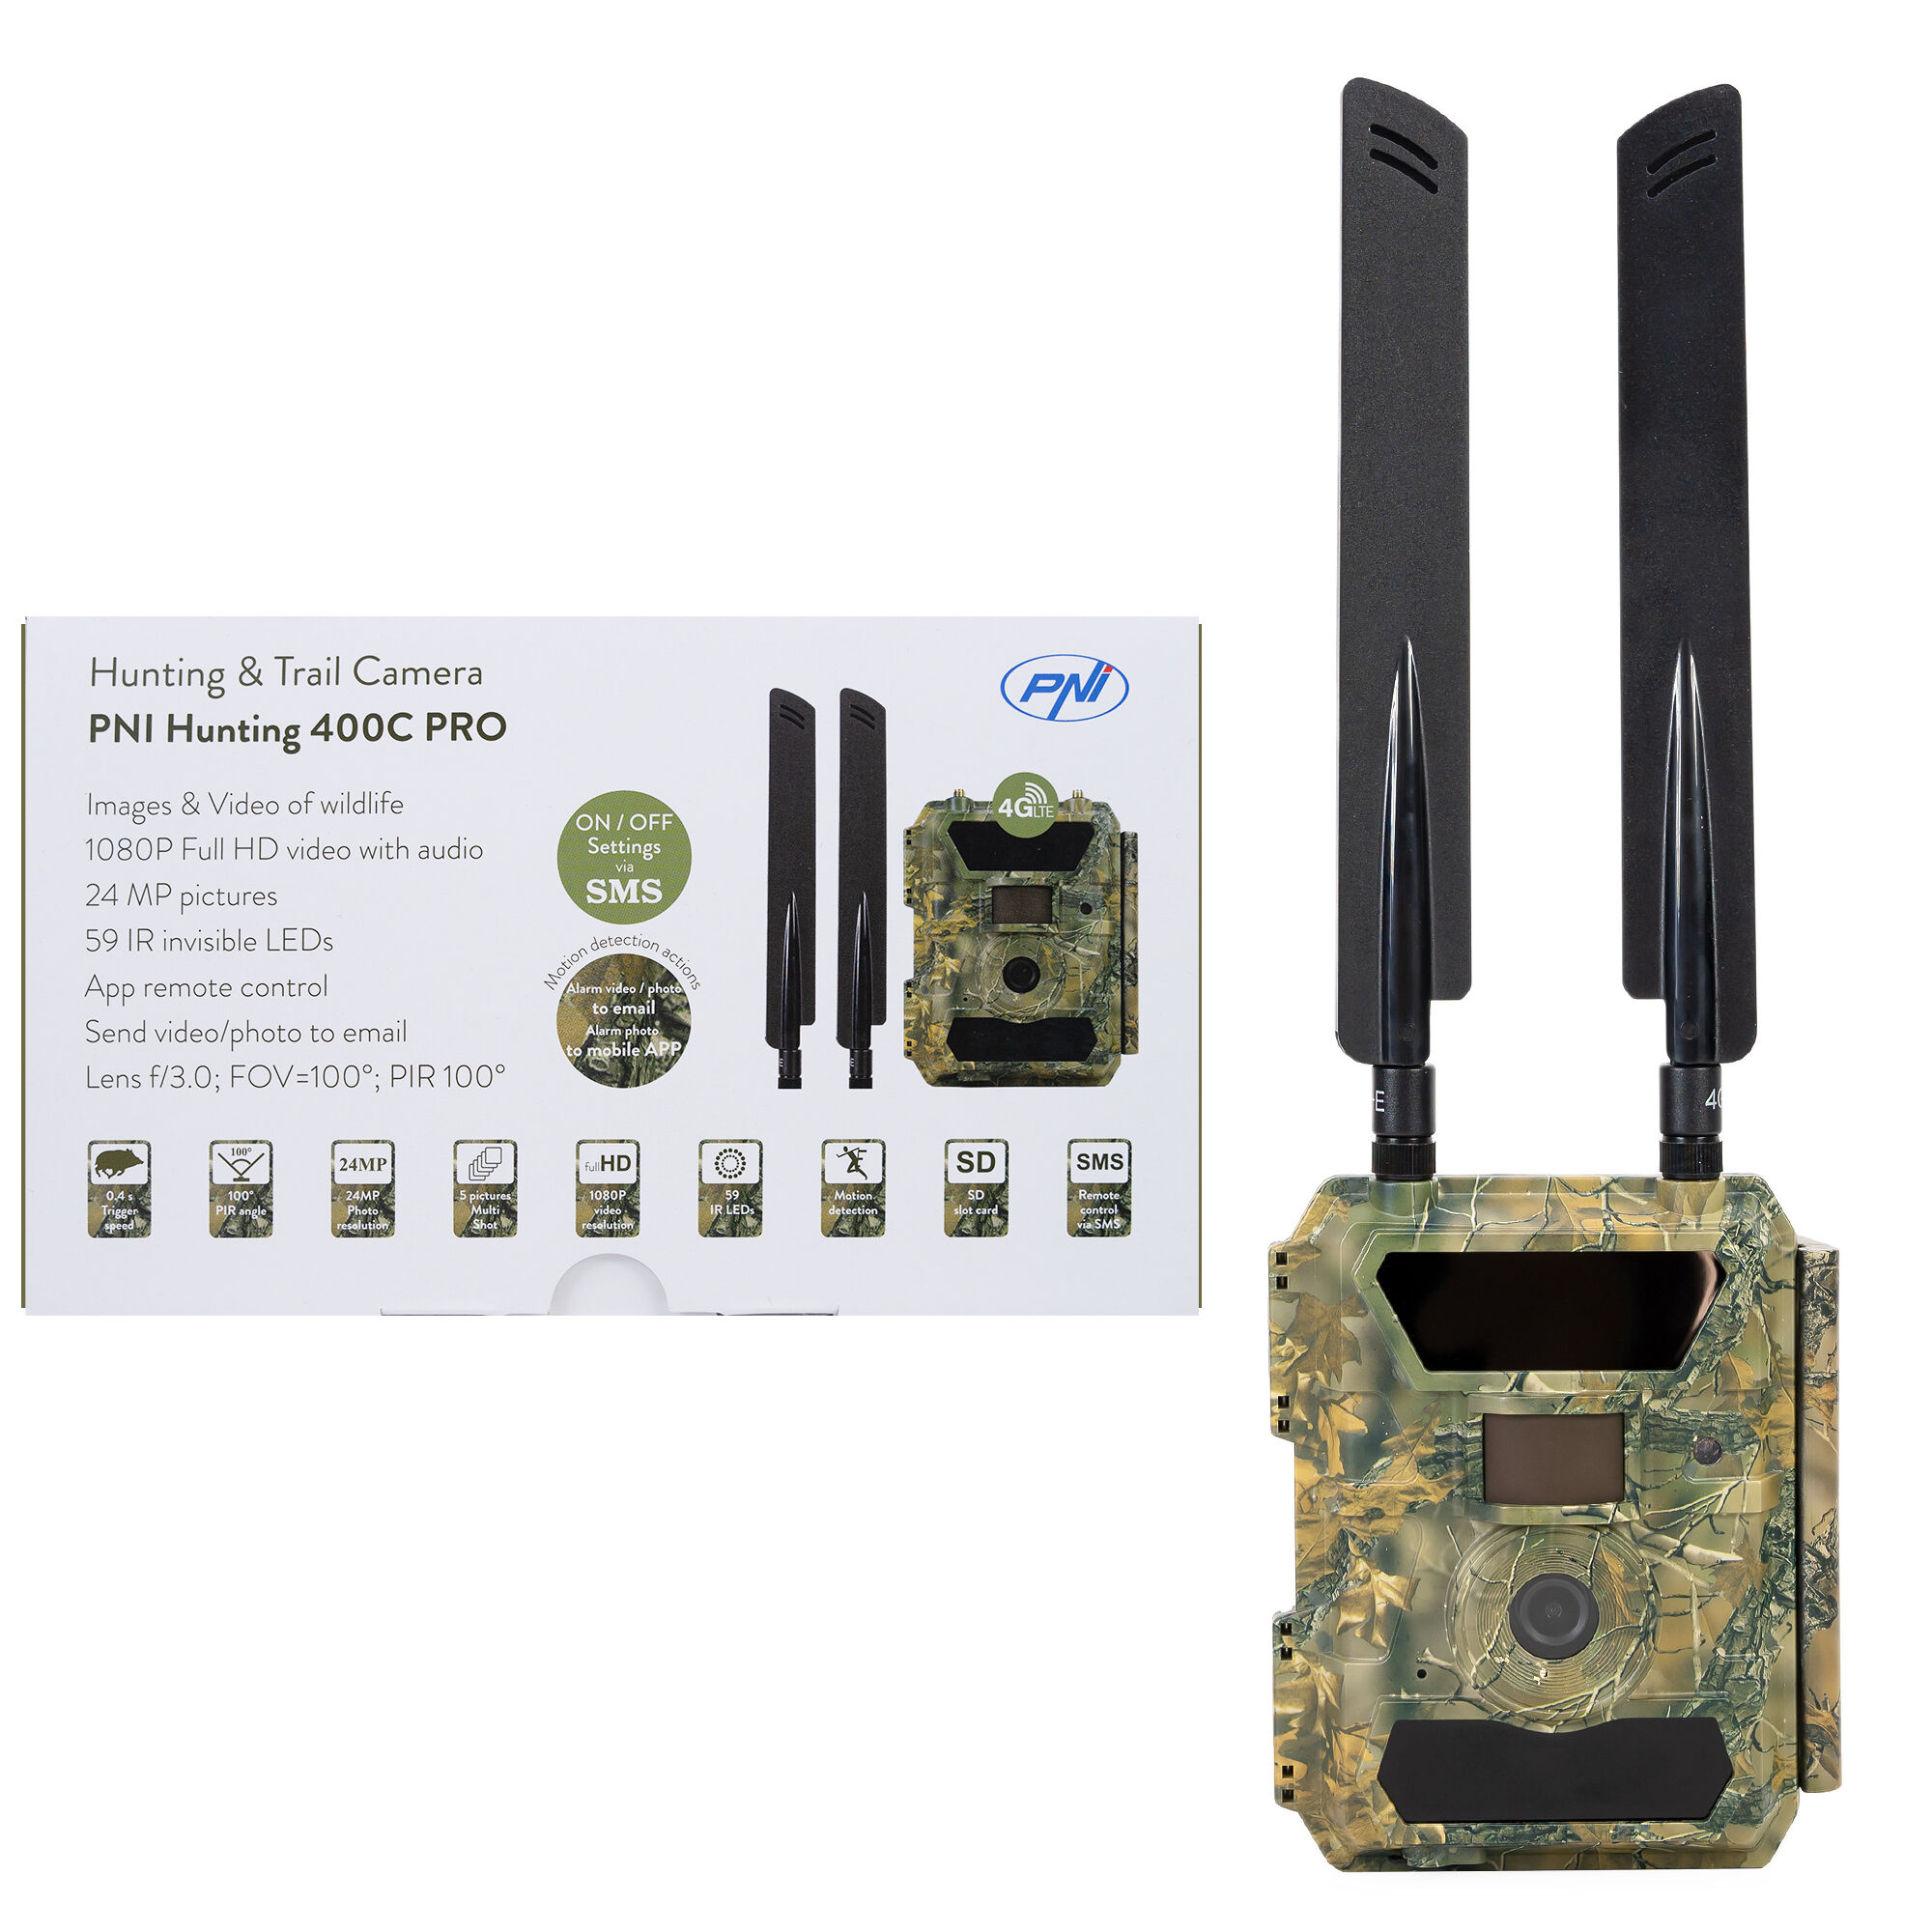 PNI Hunting 400C PRO 24MP Wildkamera mit 4G LTE Internet, GPS